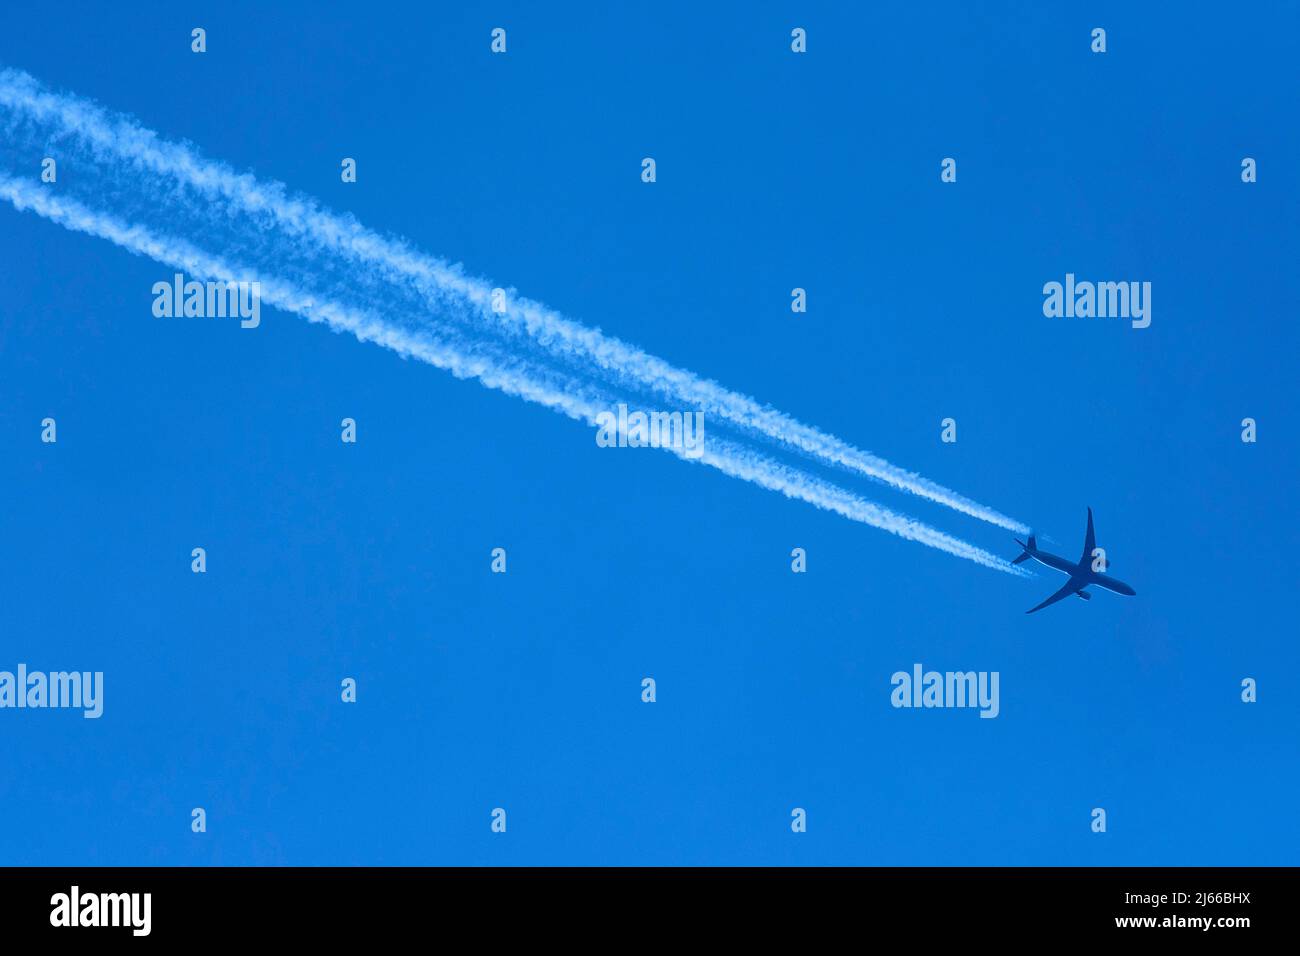 Verkehrflugzeug mit Kondensstreifen, blauer Himmel, Bayern, Deutschland Stock Photo